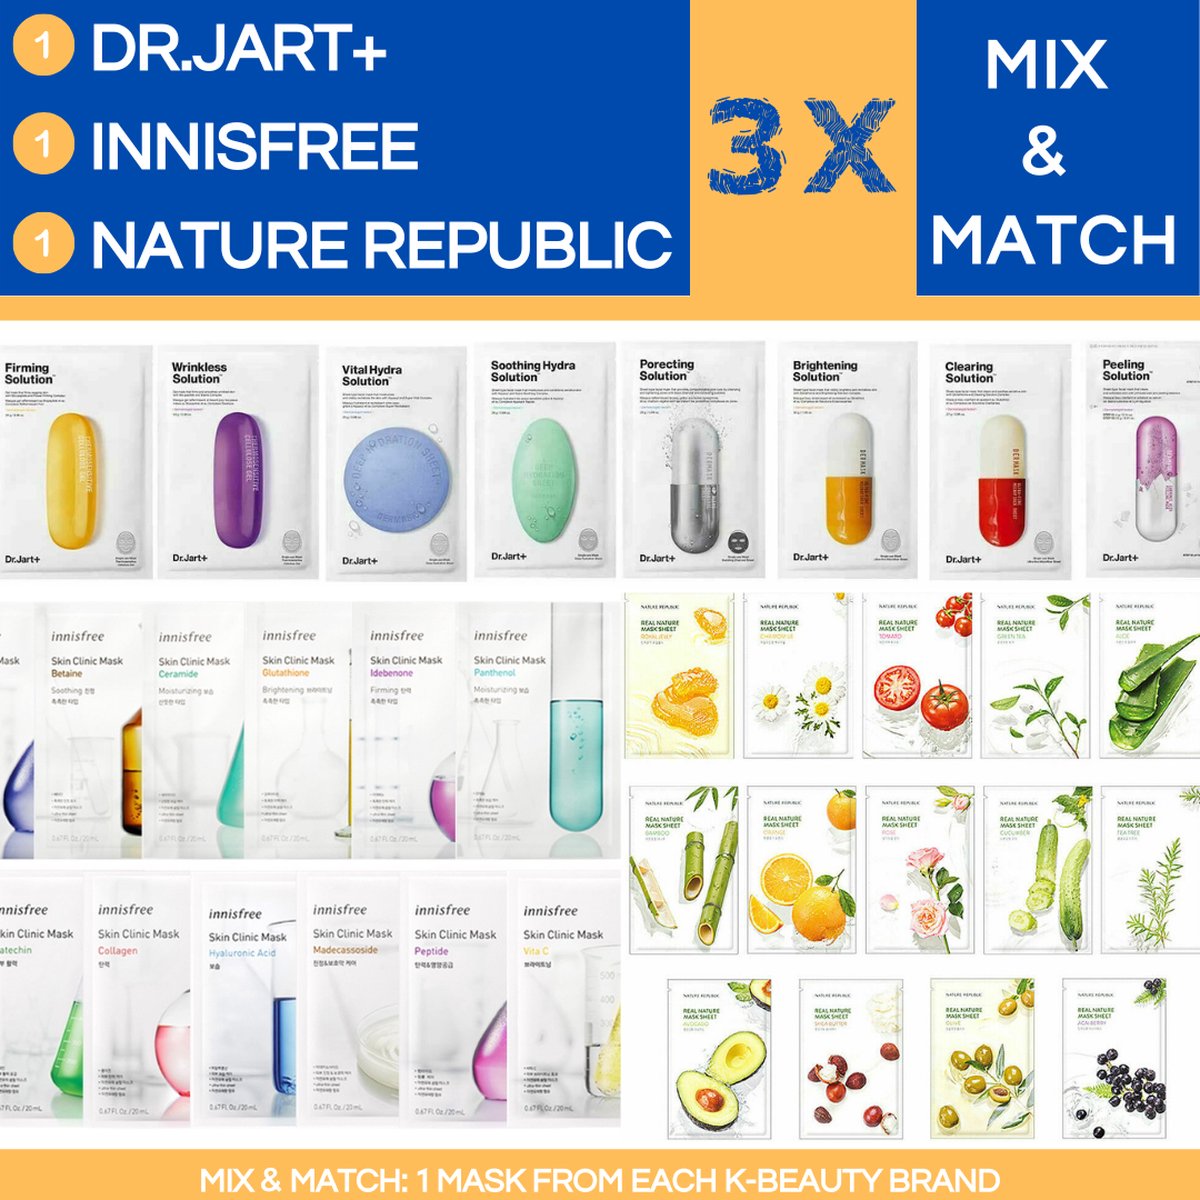 NATURE REPUBLIC & INNISFREE & DR.JART+ Mix & Match - 3 x Korean Beauty Face Mask - Combinatie Set voor Hydratatie en Stralende Huid - Stralende Huid - Hydratatie - Droge Huid - Alle Huidtypen - Huidverzorging - Verassing Geschenk - Skin Routine